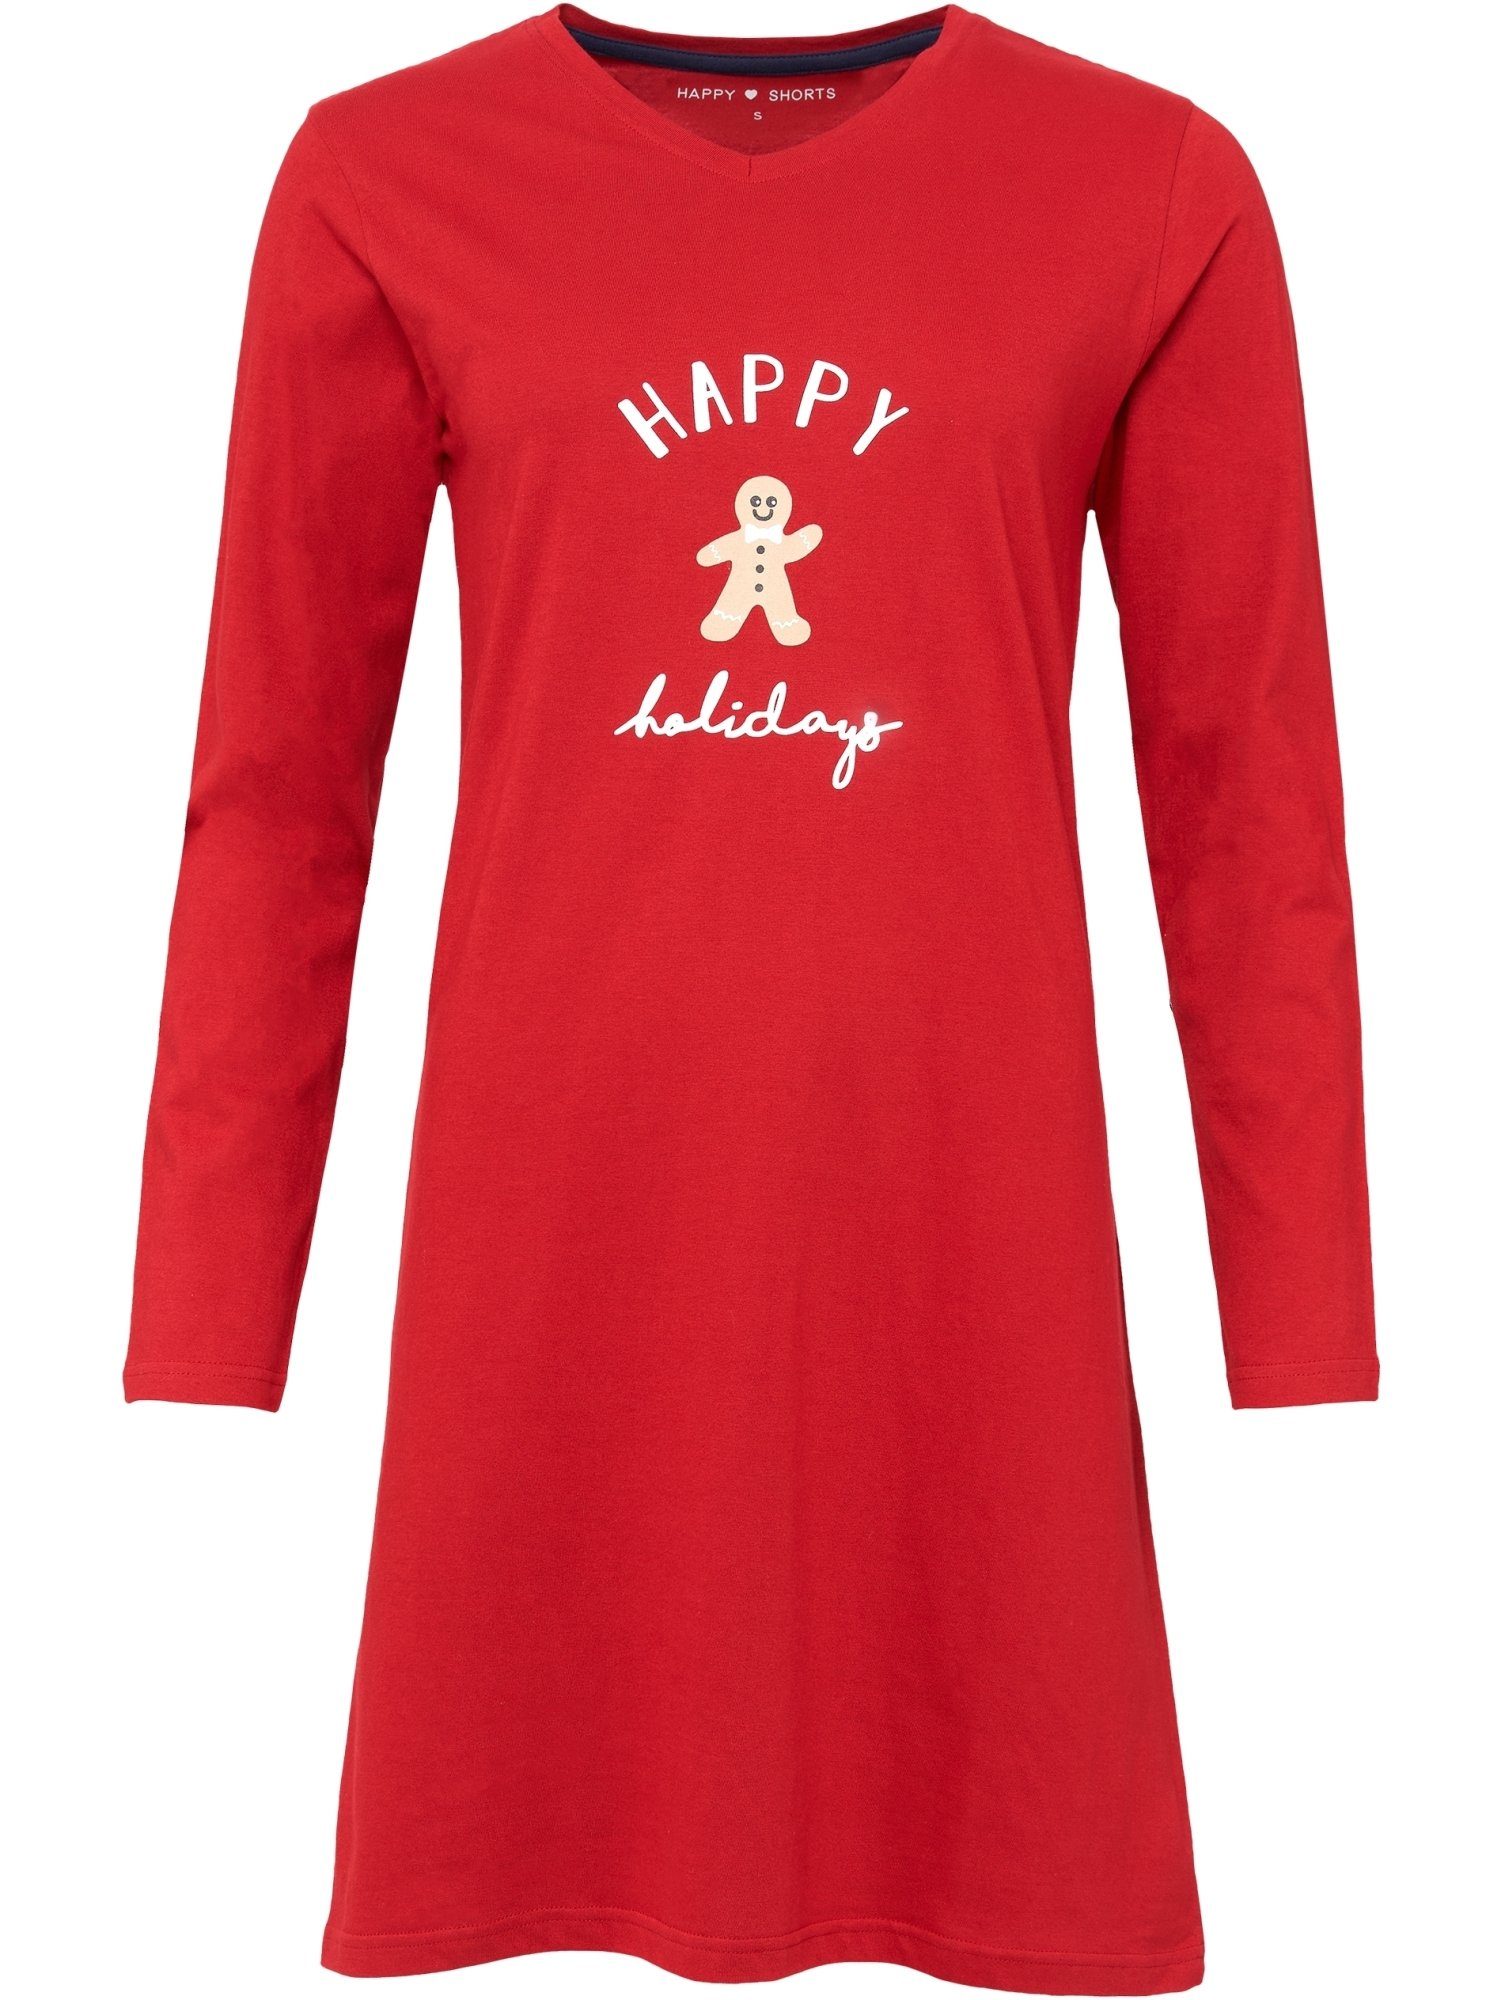 schlafshirt schlafmode Nachthemd Pyjama SHORTS HAPPY red Xmas